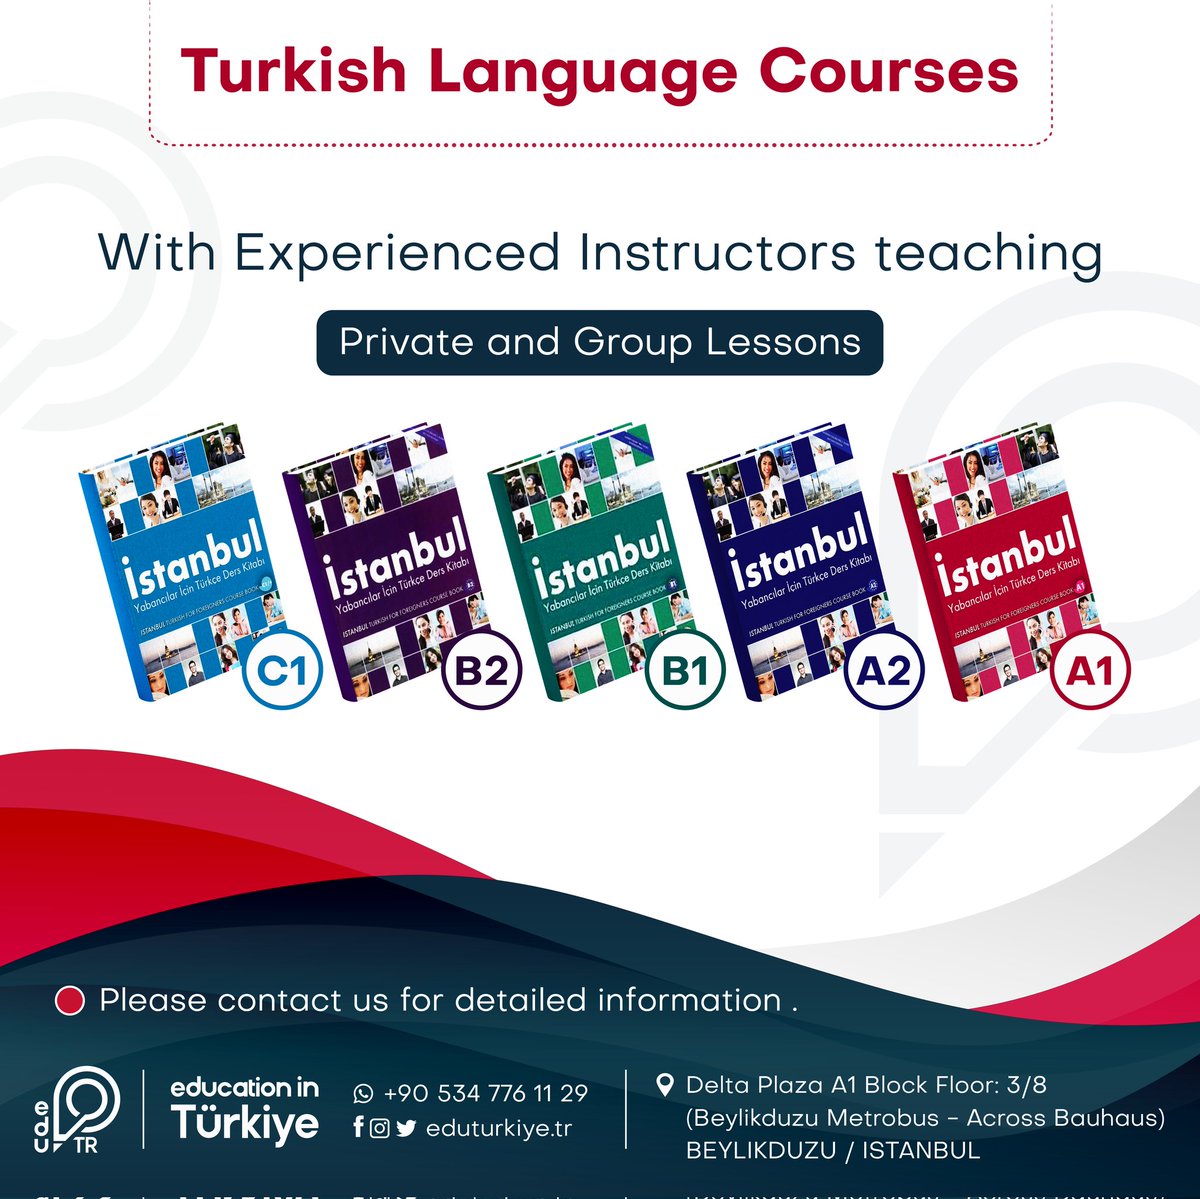 #turkishlanguage
#turkish_language
#turkish_language_learning
#turkey
#türkçe